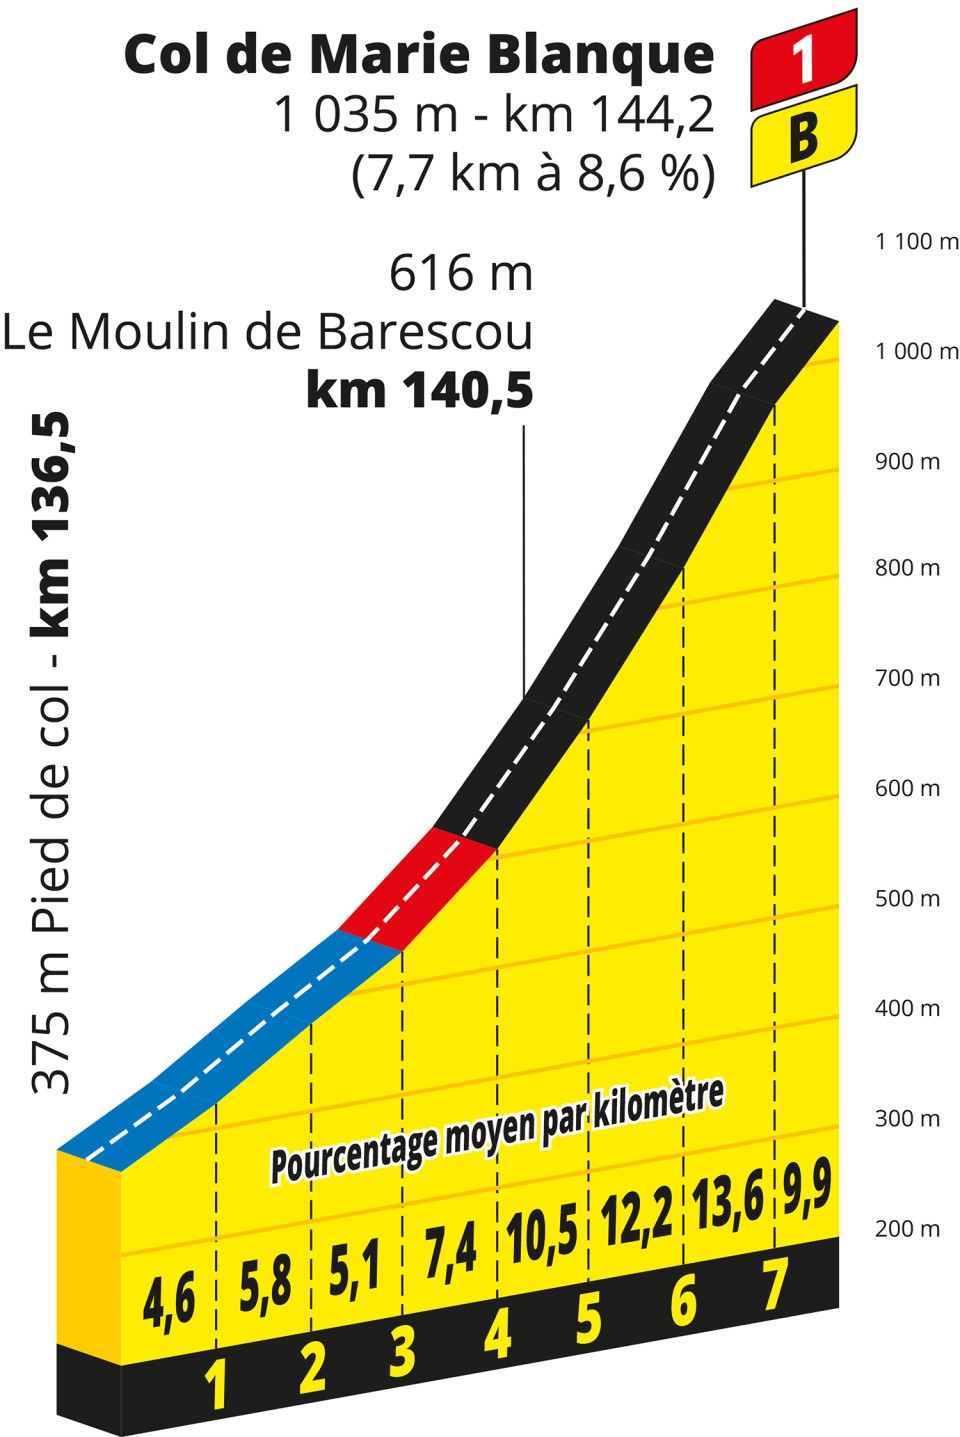 Col de Marie Blanc on stage five of the 2023 Tour de France